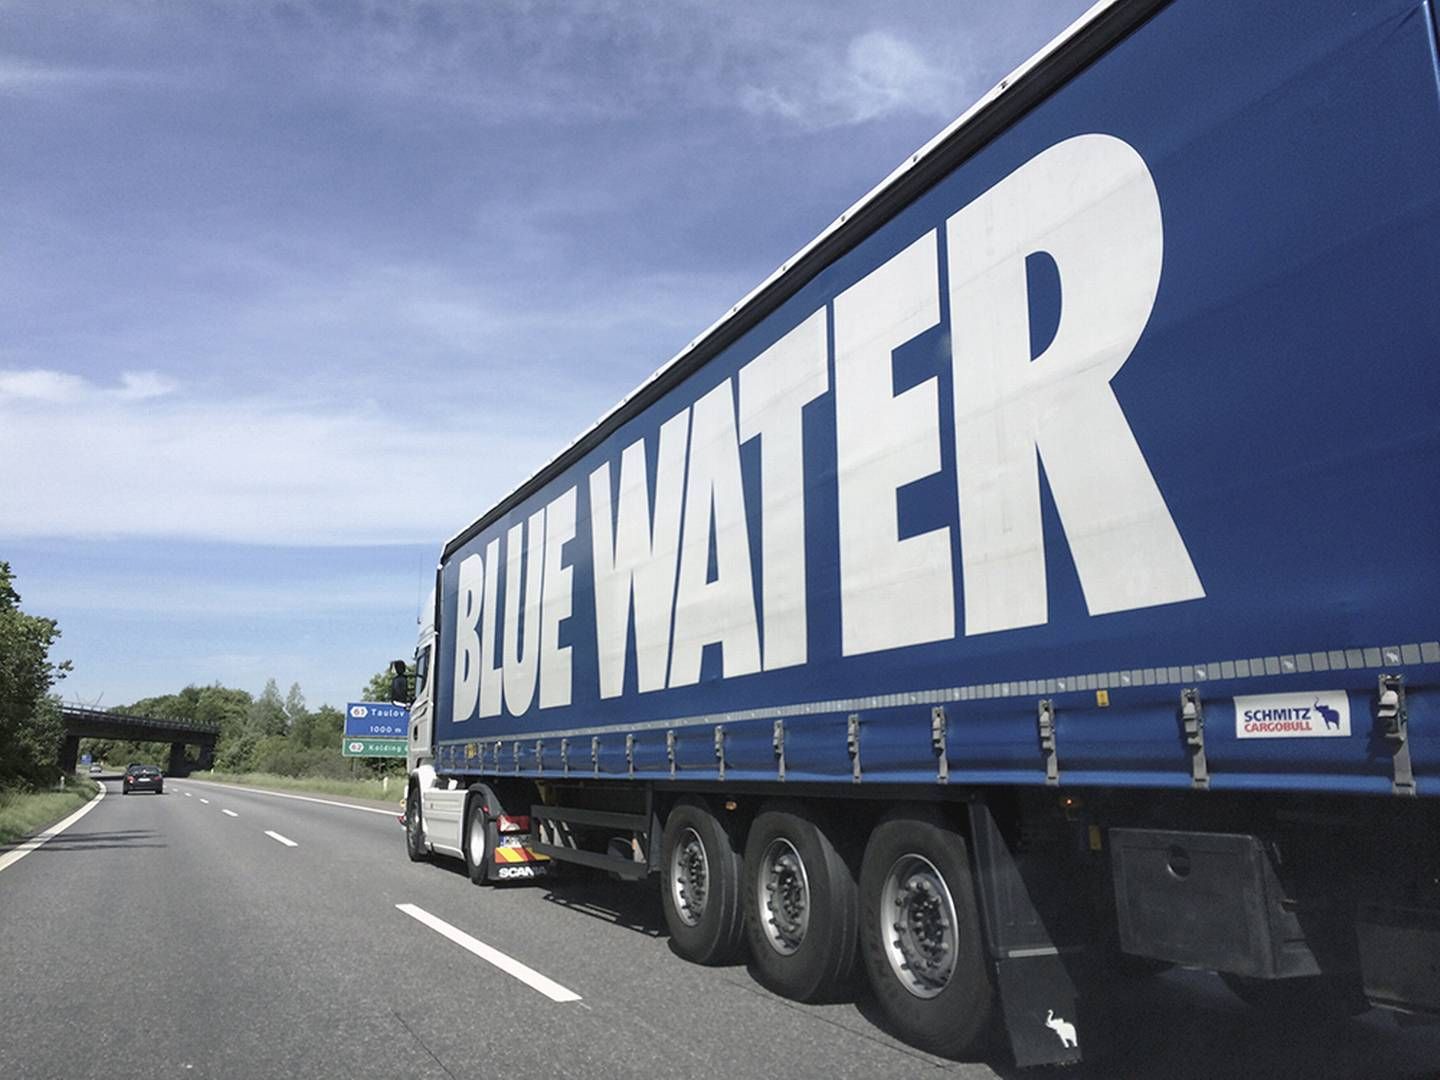 Blue Water kommer ikke til at modtage 28,1 mio. kr., som logistikselskabet i landsretten har krævet fra Odense Havn. | Foto: Pr / Blue Water Shipping